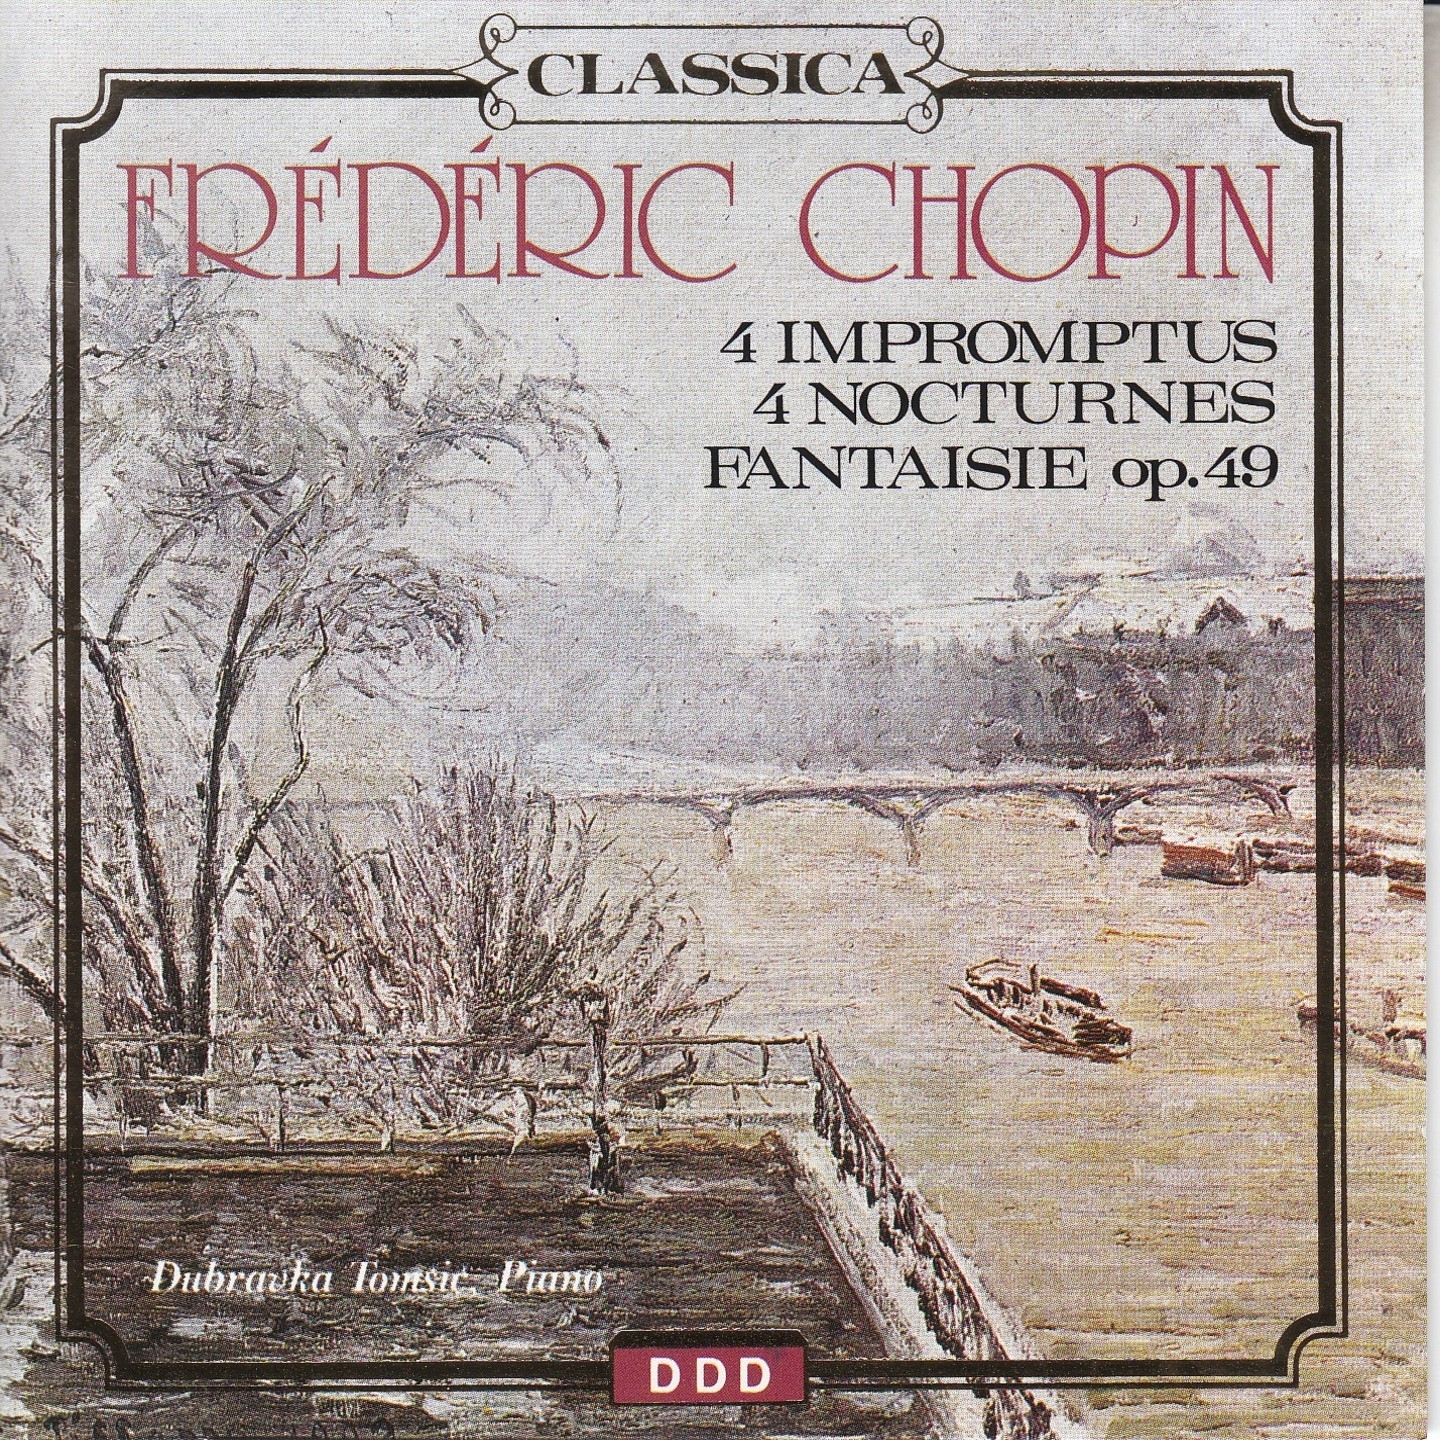 Fre de ric Chopin: 4 Impromptus, 4 Nocturnes  Fantaisie No. 14